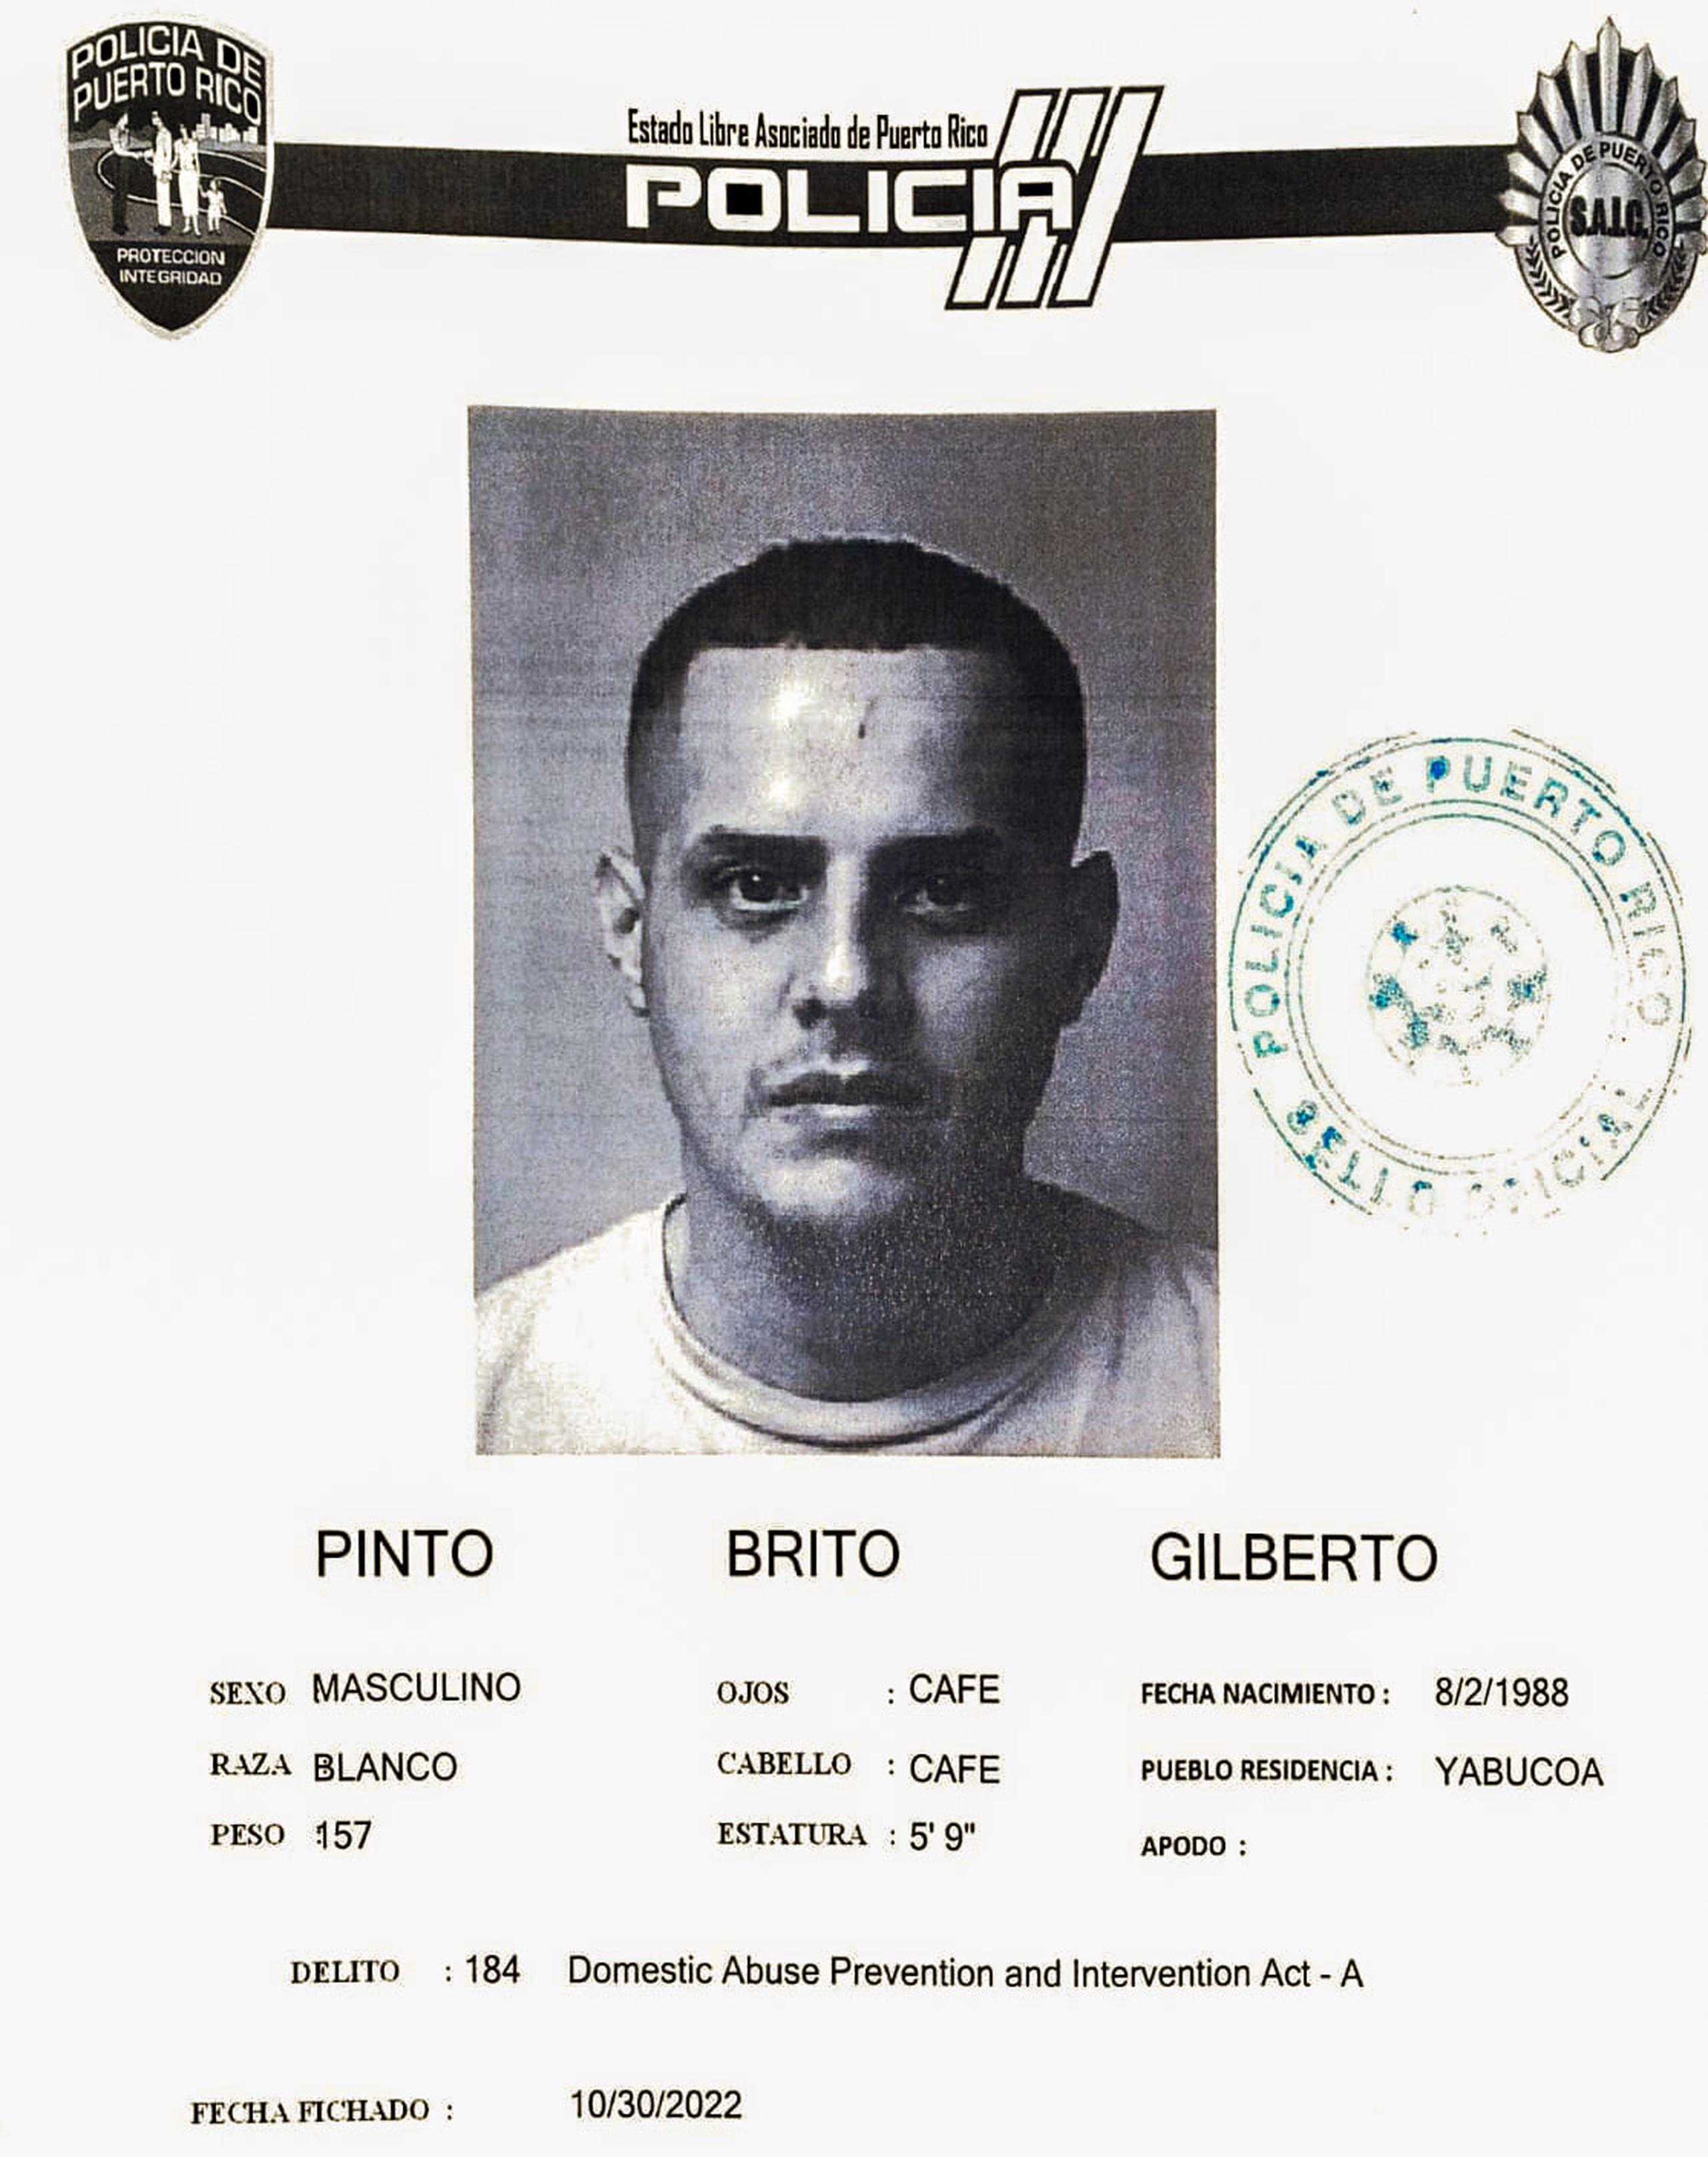 Ficha de Gilberto Pinto Brito, un cadete del Negociado de la Policía de 34 años y vecino de Yabucoa.